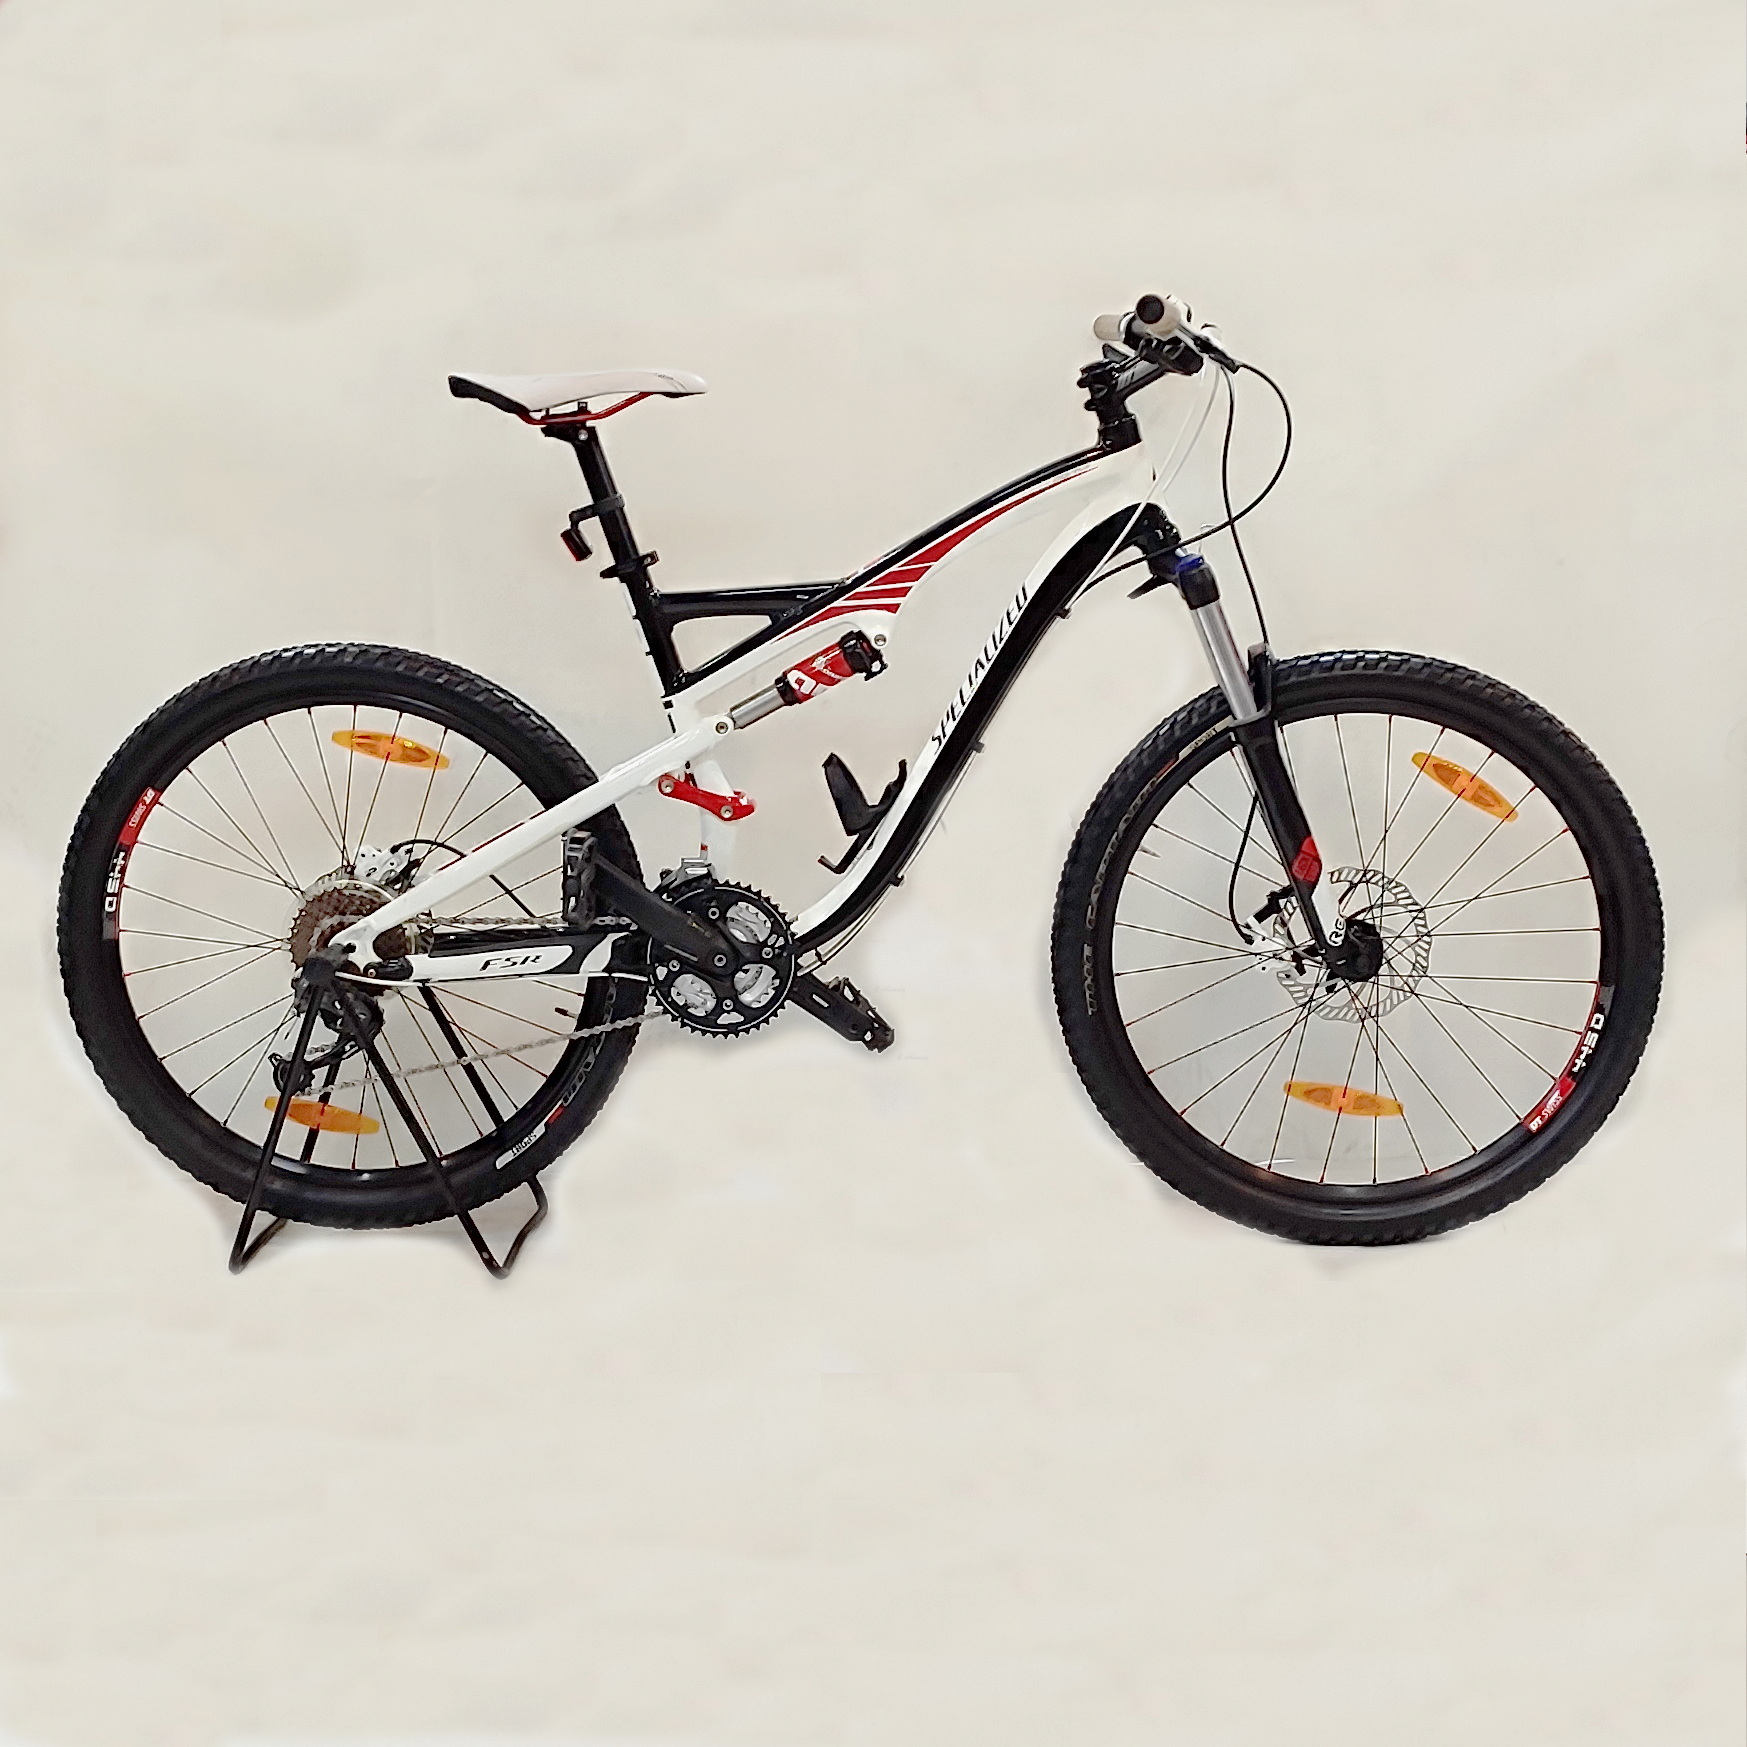 دوچرخه کوهستان اسپشیالایزد Camber COMP 2011 سایز طوقه 26 - سایز فریم M